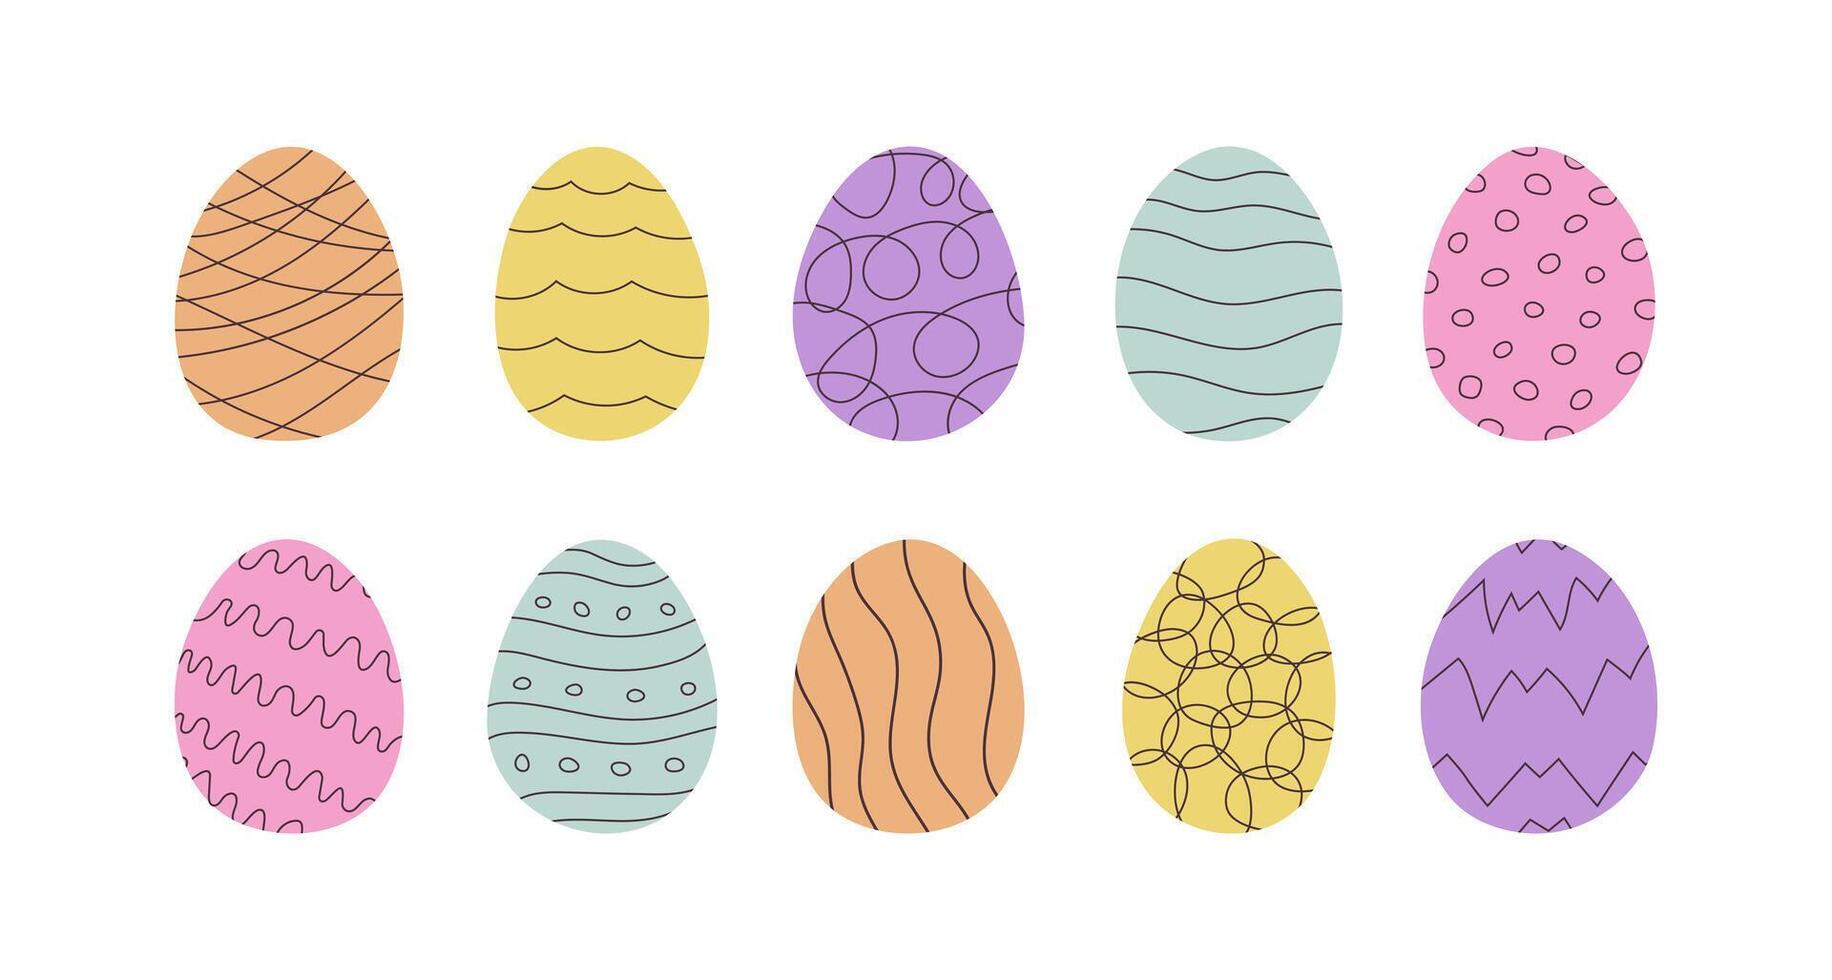 uppsättning av påsk ägg i klotter stil. Semester mat är dekorerad med abstrakt rader, vågor och Övrig mönster. hand dragen vektor illustration i pastell färger.